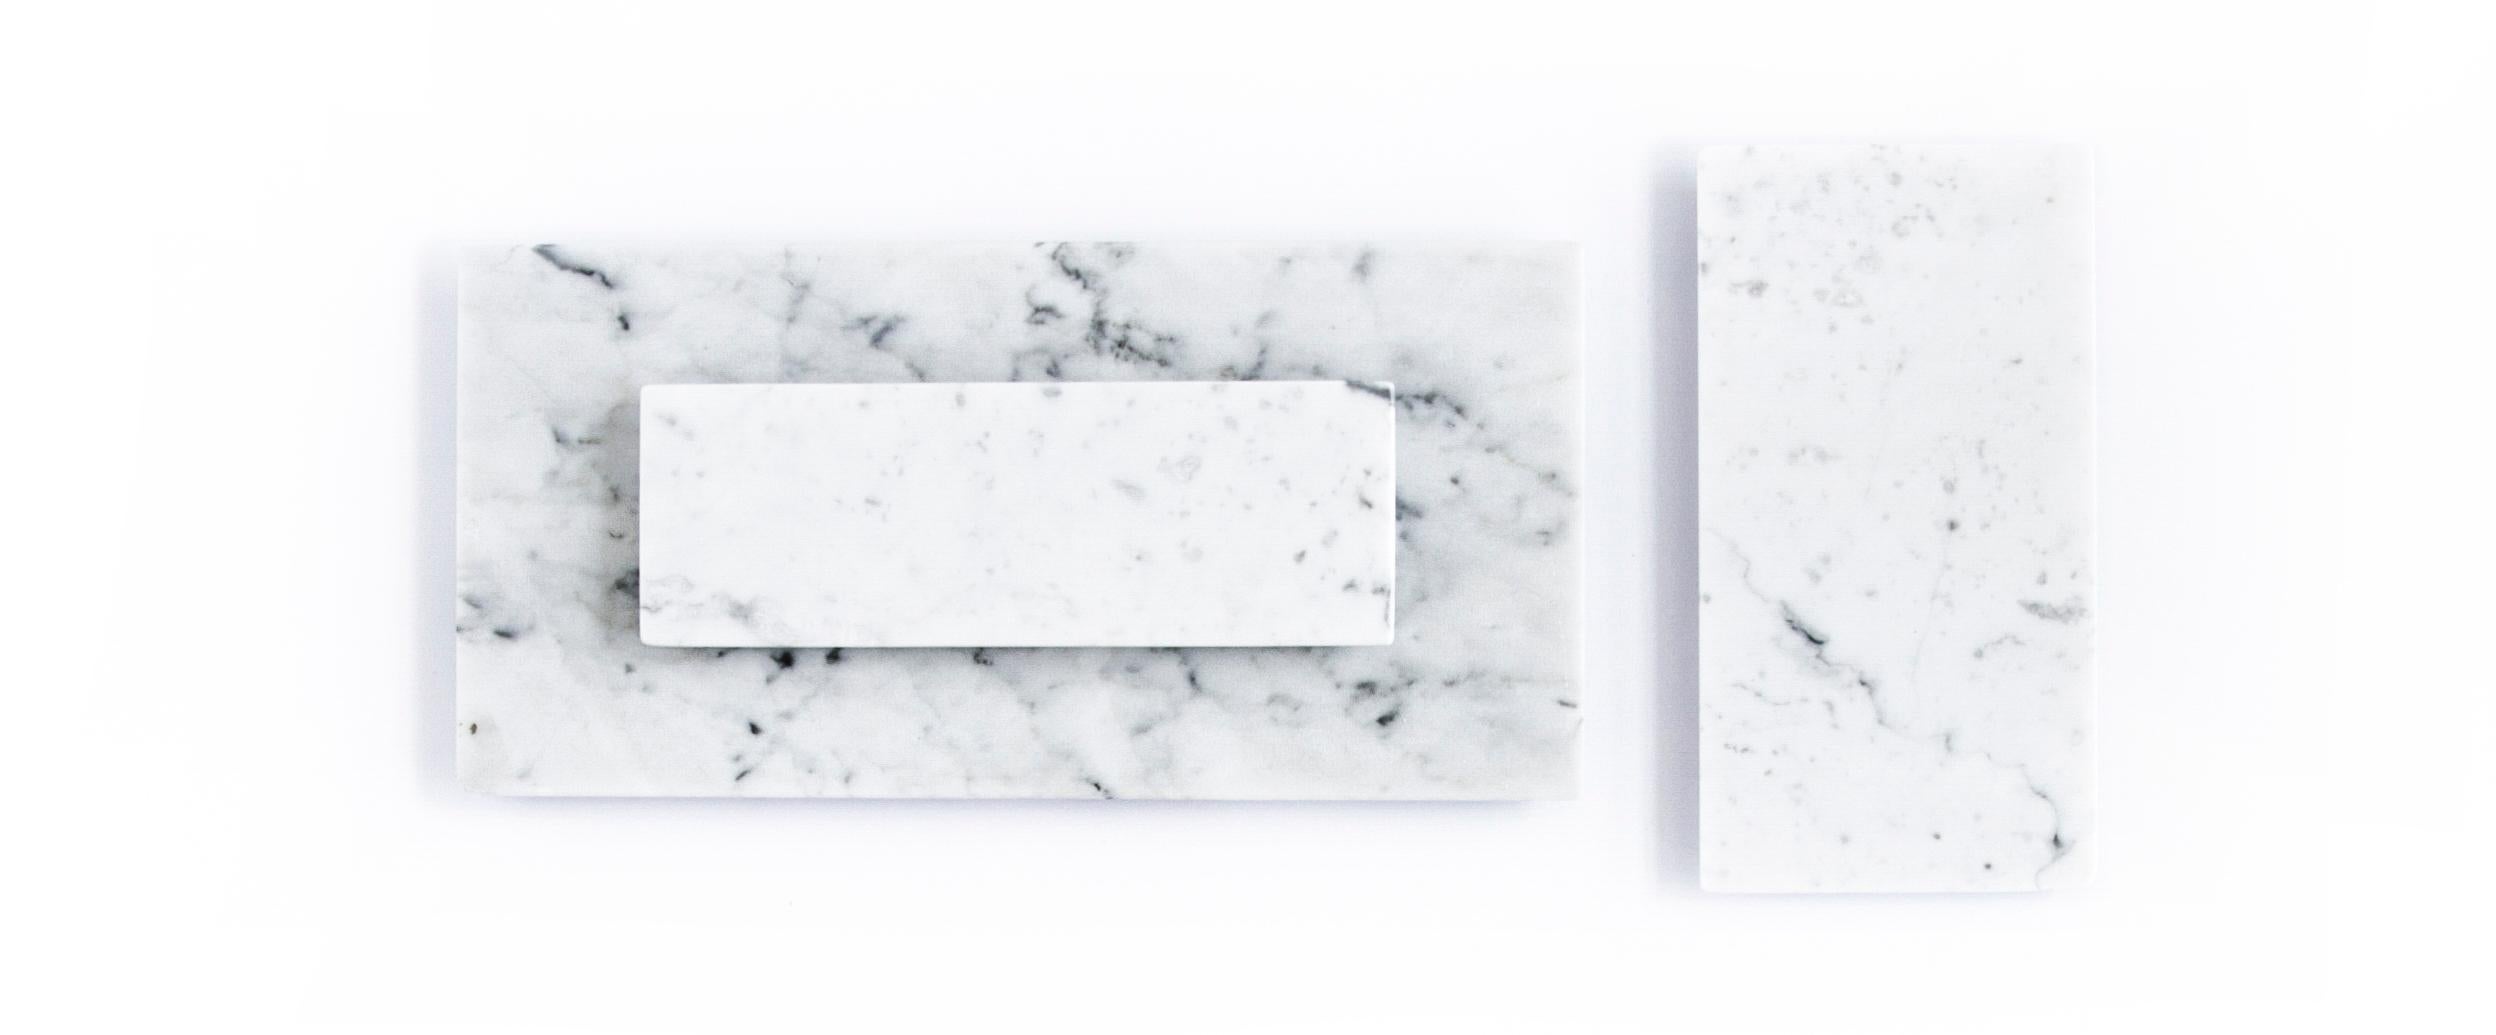 Set von 3 Canapè - Käseplatten - Sushi-Platten - Servierplatten in 3 verschiedenen Größen in weißem Carrara-Marmor.
Groß 30,5 x 15 x 1 cm - Mittel 20 x 10,5 x 1 cm - Klein 20 x 7 x 1 cm
Ideal für Spa, Hotel, Restaurant und zum Servieren von Speisen